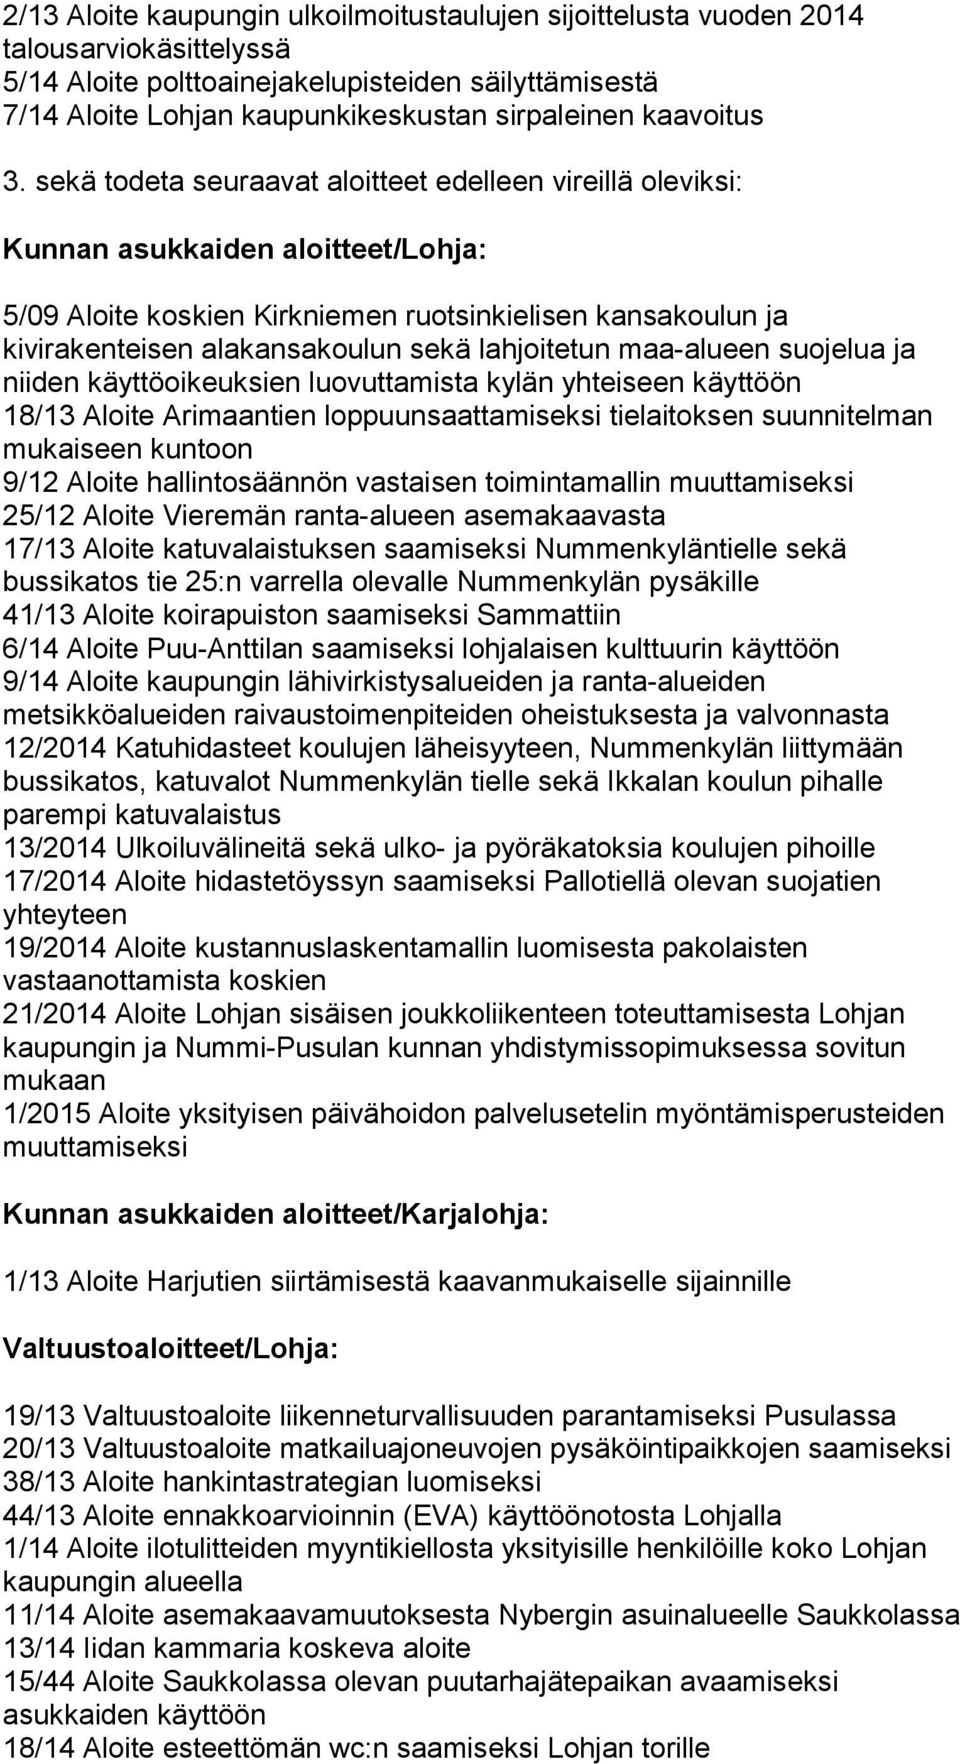 sekä todeta seuraavat aloitteet edelleen vireillä oleviksi: 5/09 Aloite koskien Kirkniemen ruotsinkielisen kansakoulun ja kivirakenteisen alakansakoulun sekä lahjoitetun maa-alueen suojelua ja niiden